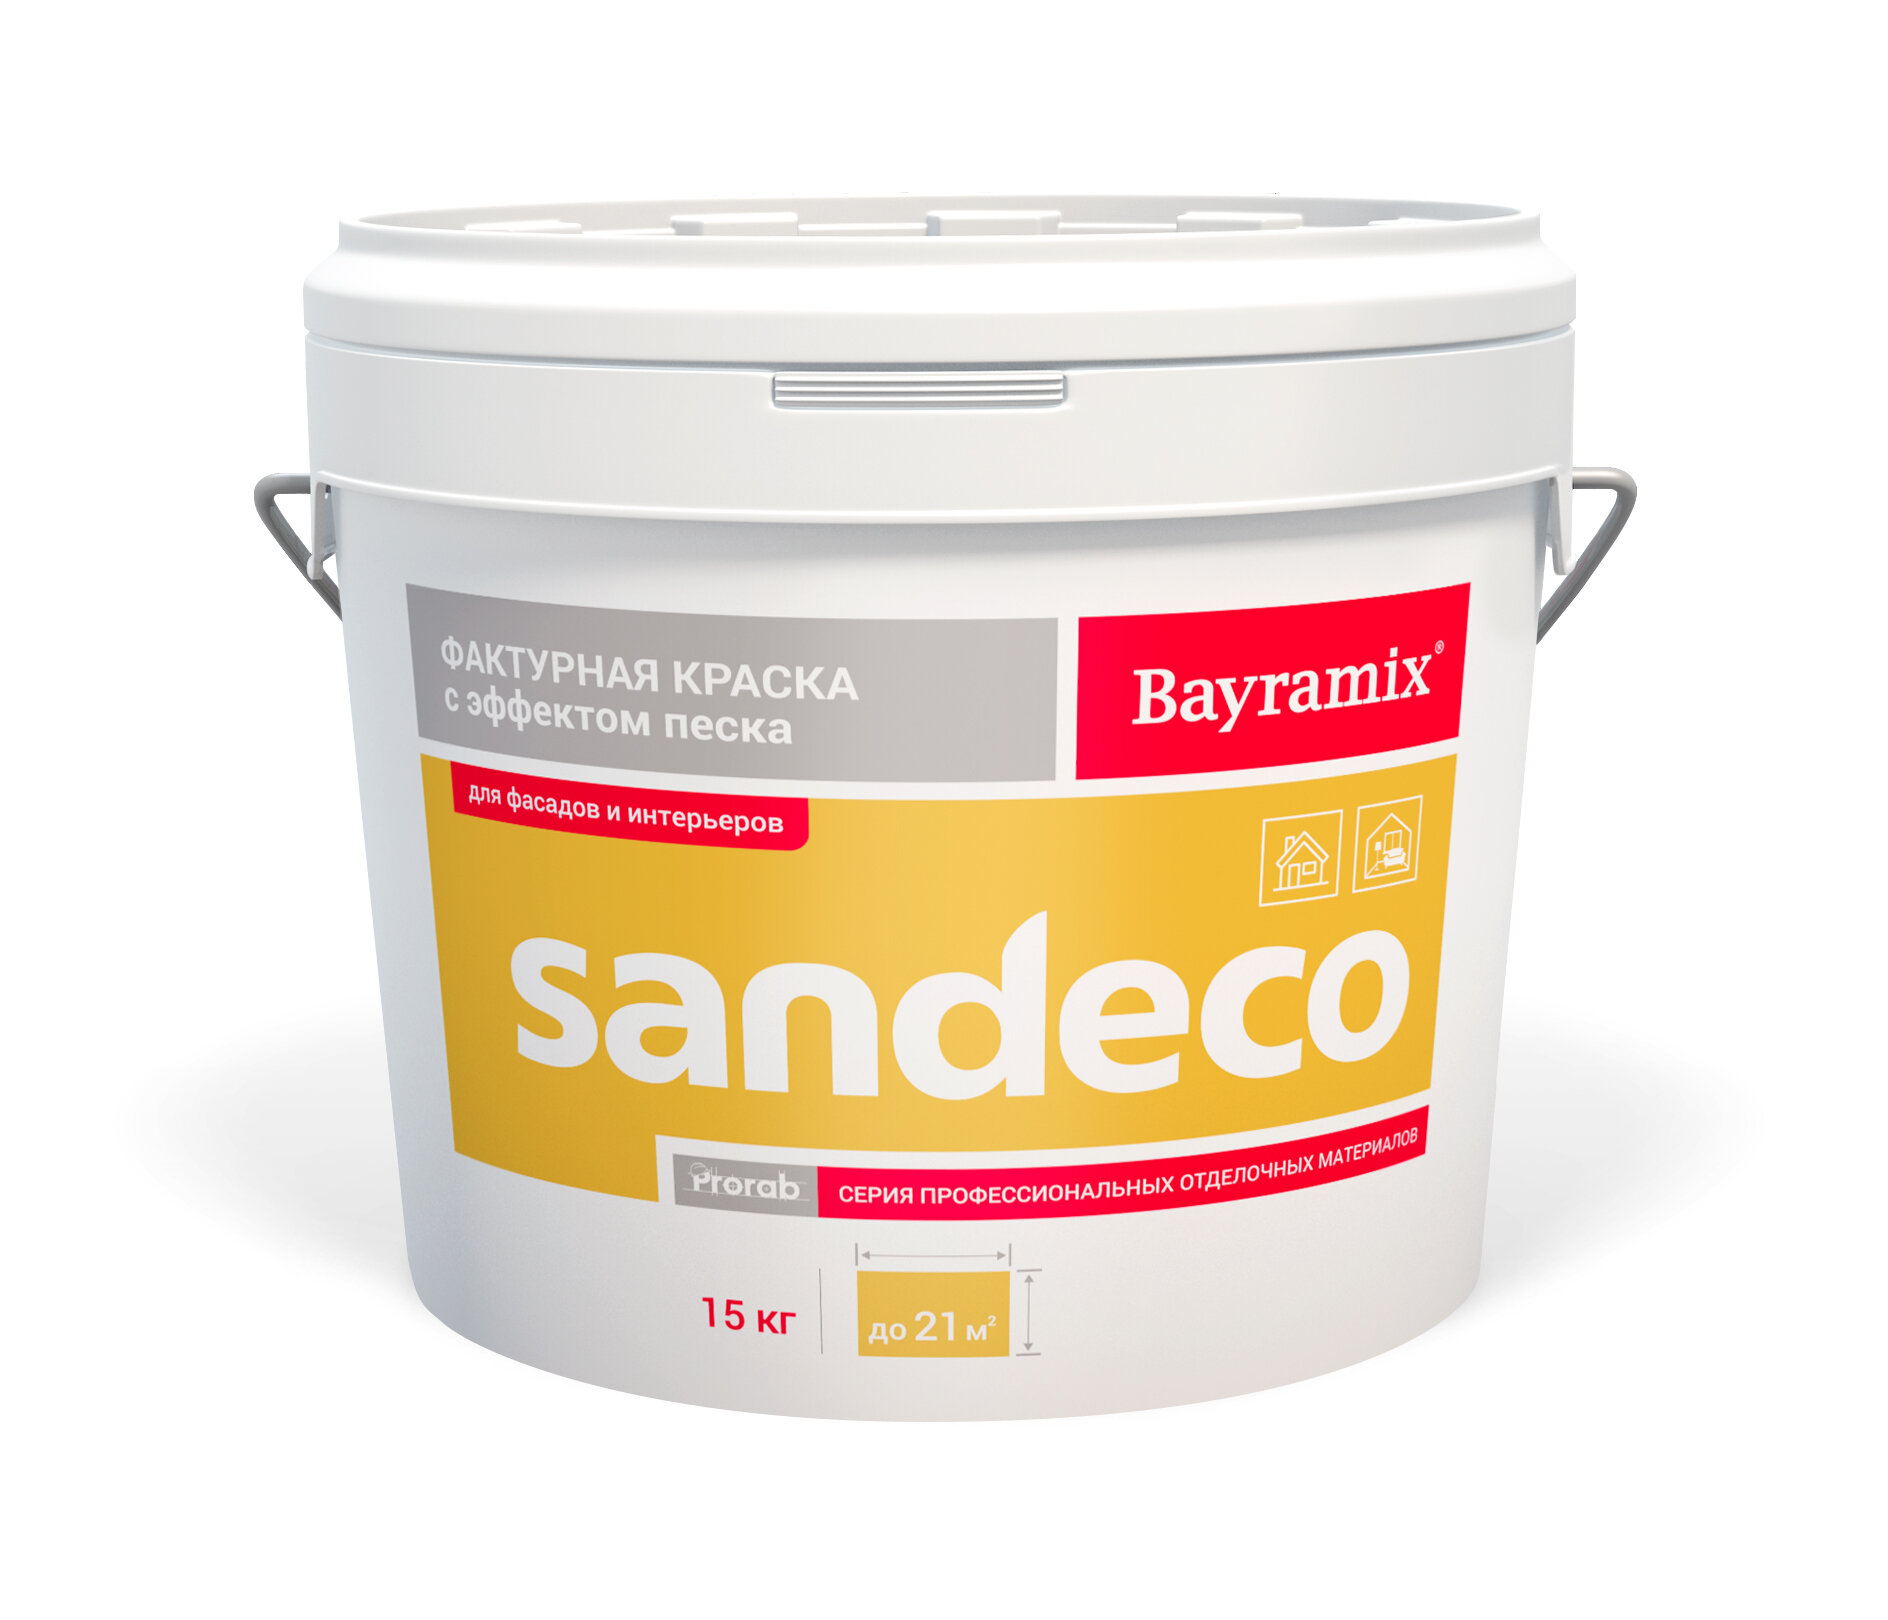 Bayramix Фактурная краска Sandeco для наружных и внутренних работ 15 кг